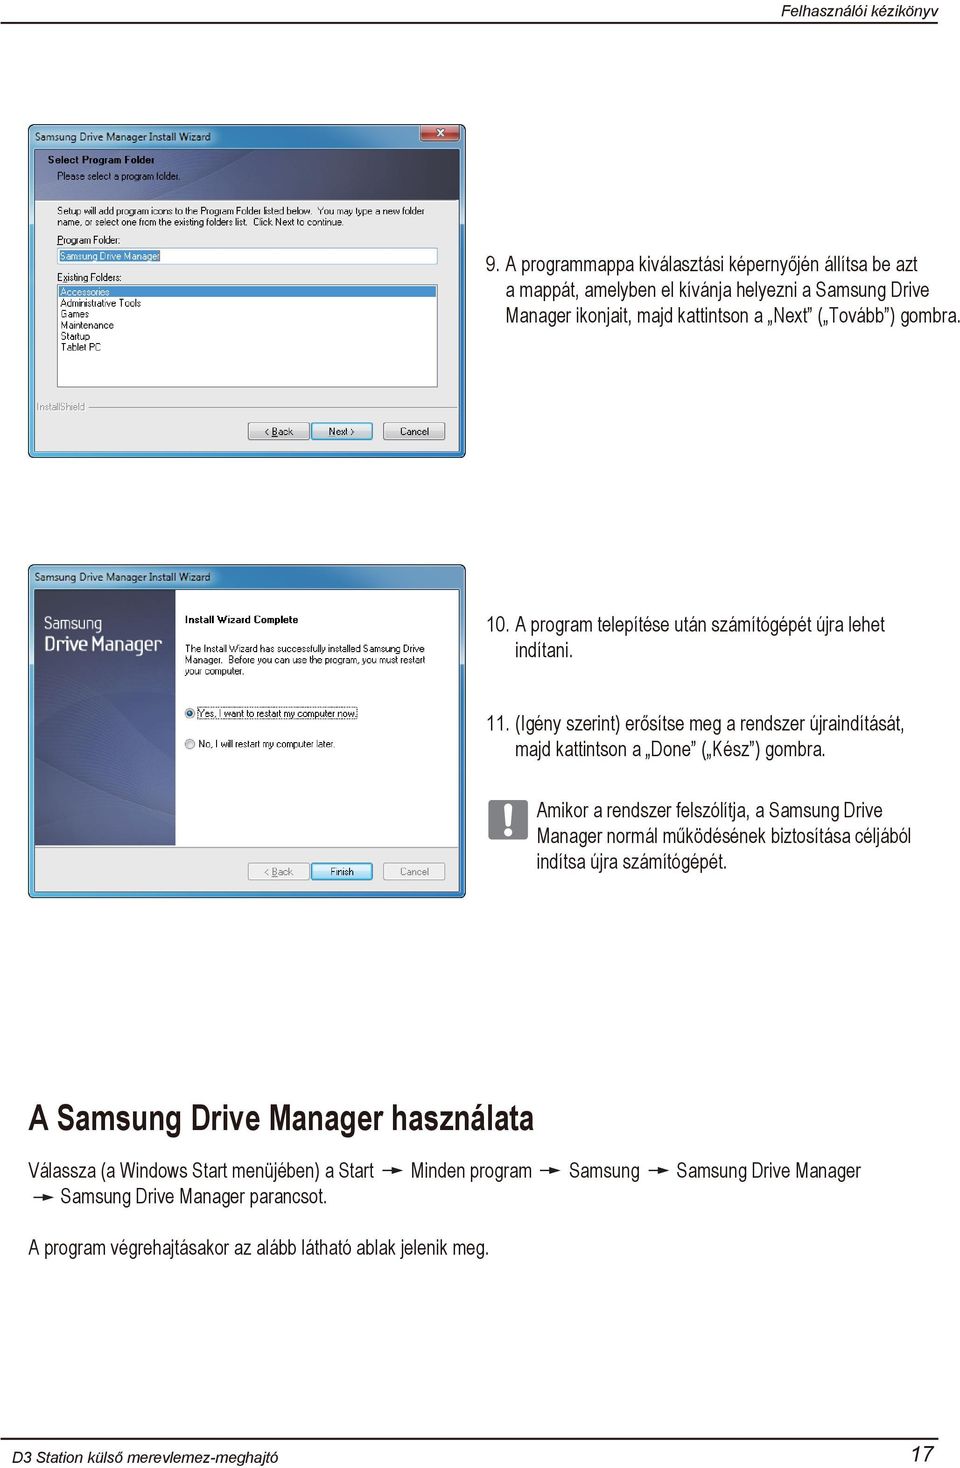 Amikor a rendszer felszólítja, a Samsung Drive Manager normál működésének biztosítása céljából indítsa újra számítógépét.